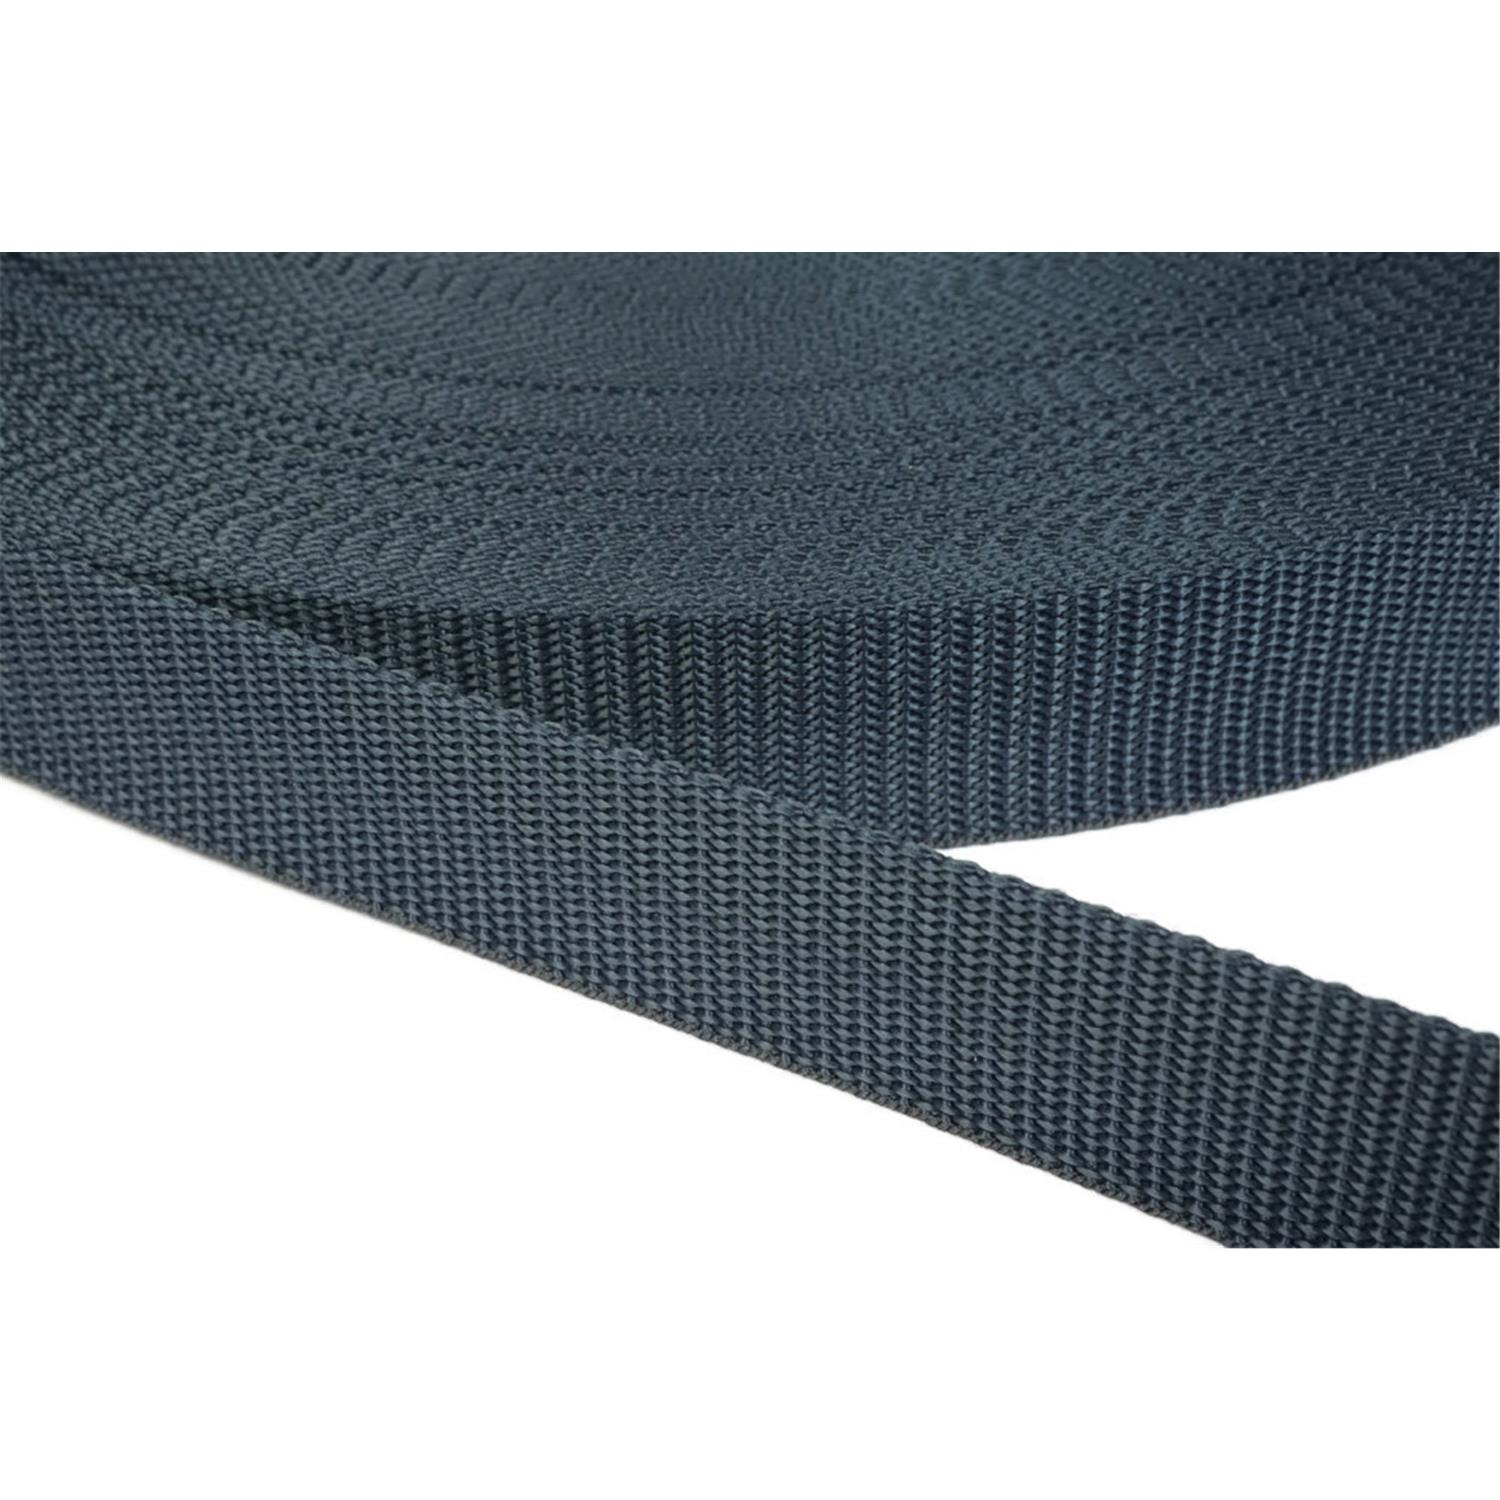 Gurtband 25mm breit aus Polypropylen in 41 Farben 40 - dunkelgrau/blau 50 Meter